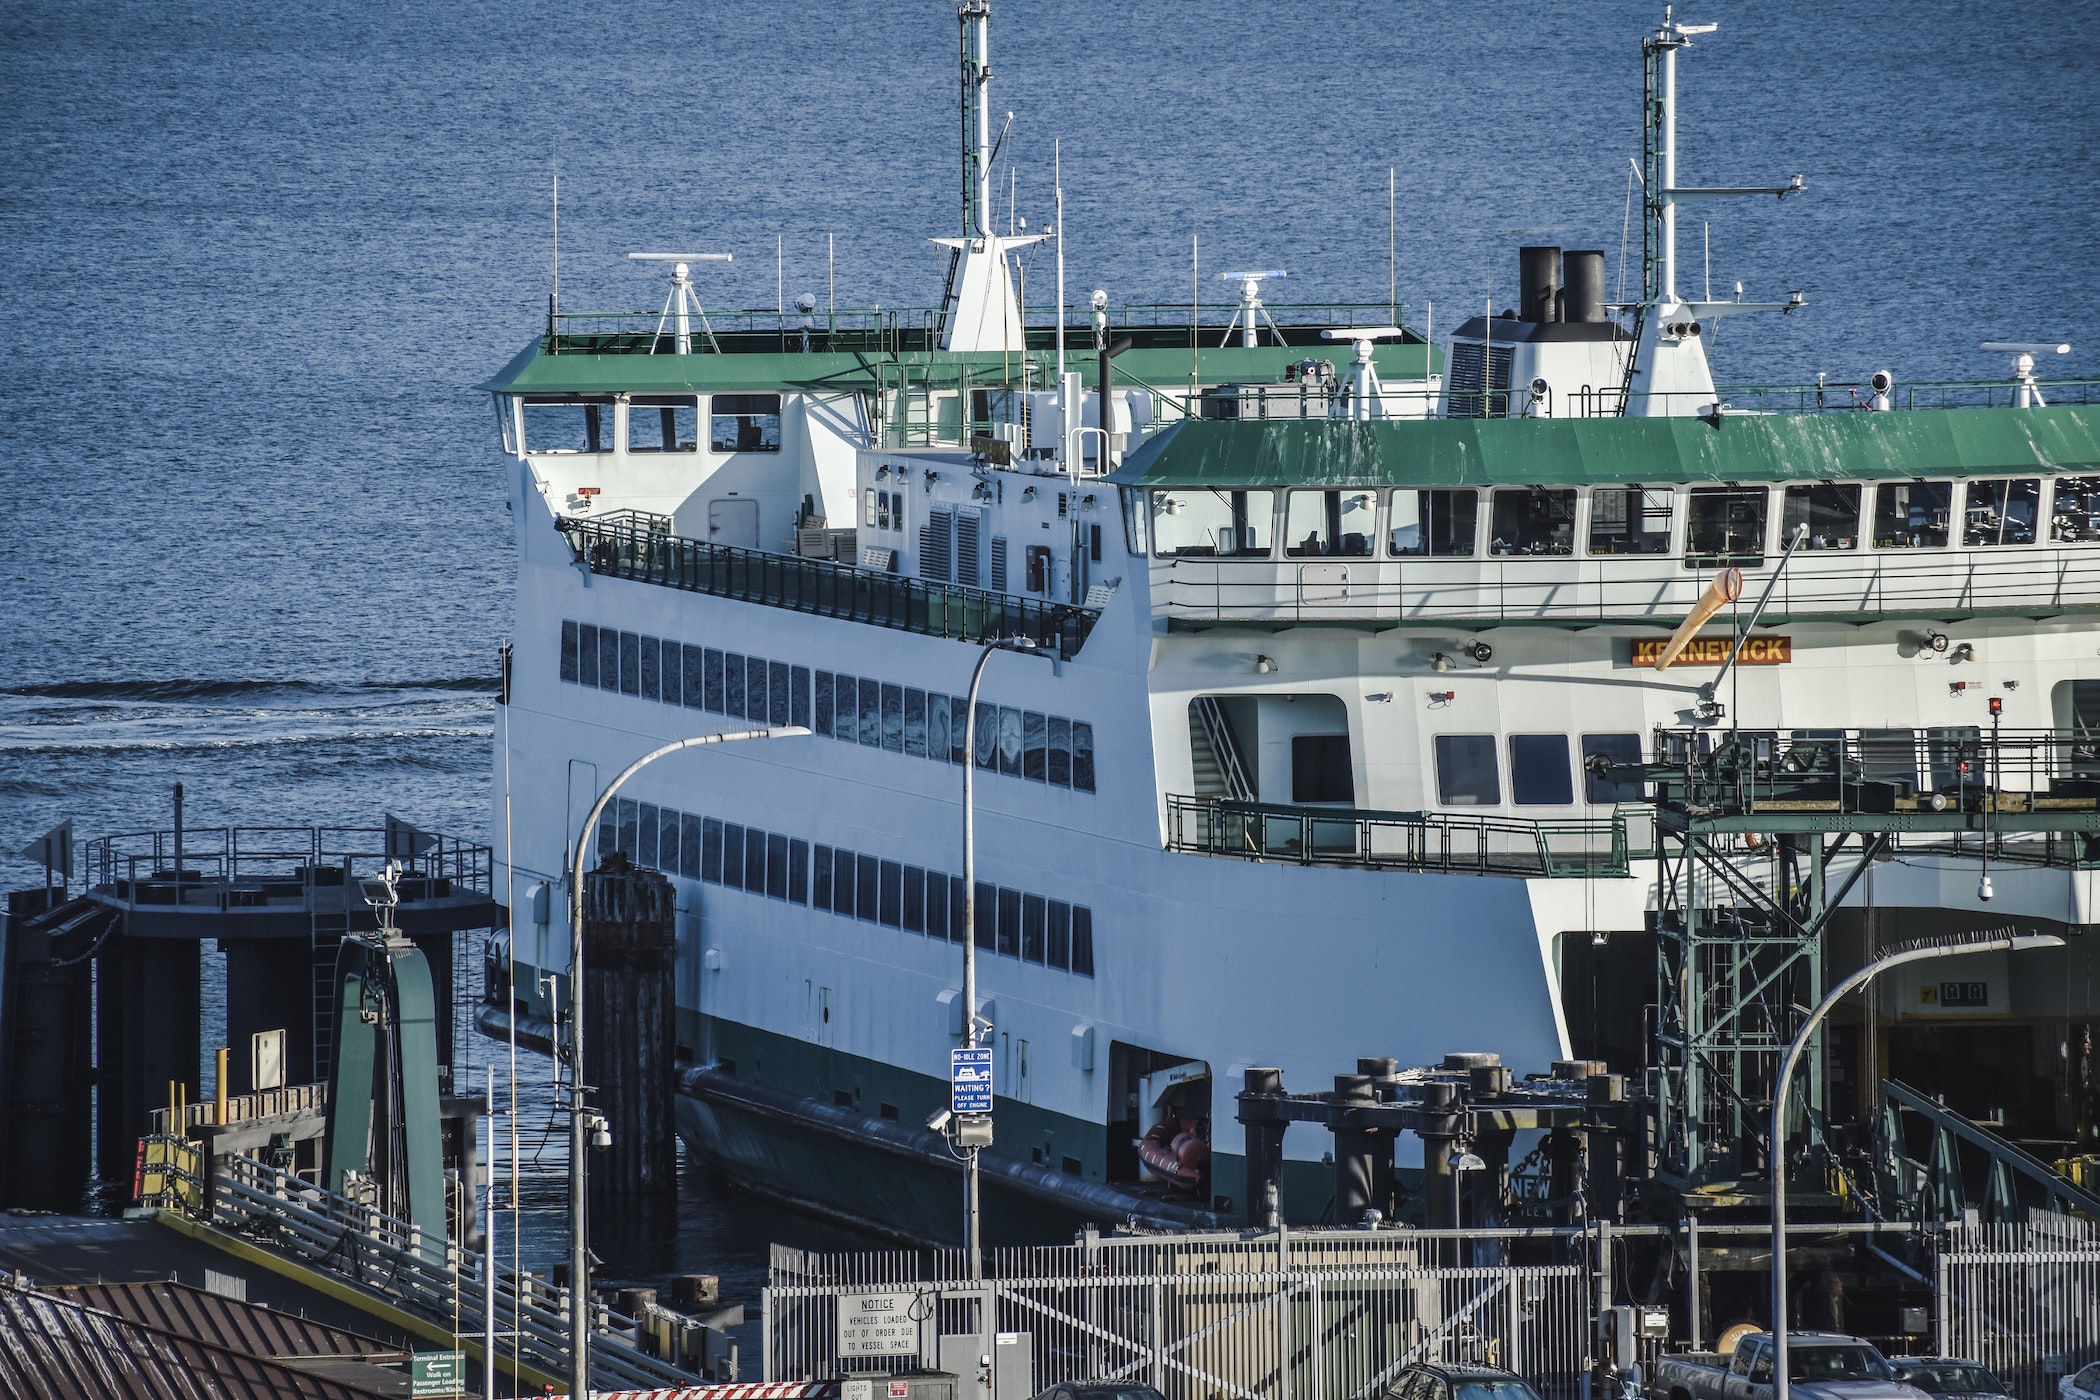 Conexiones regulares del ferry  entre Almirante e Isla Colón